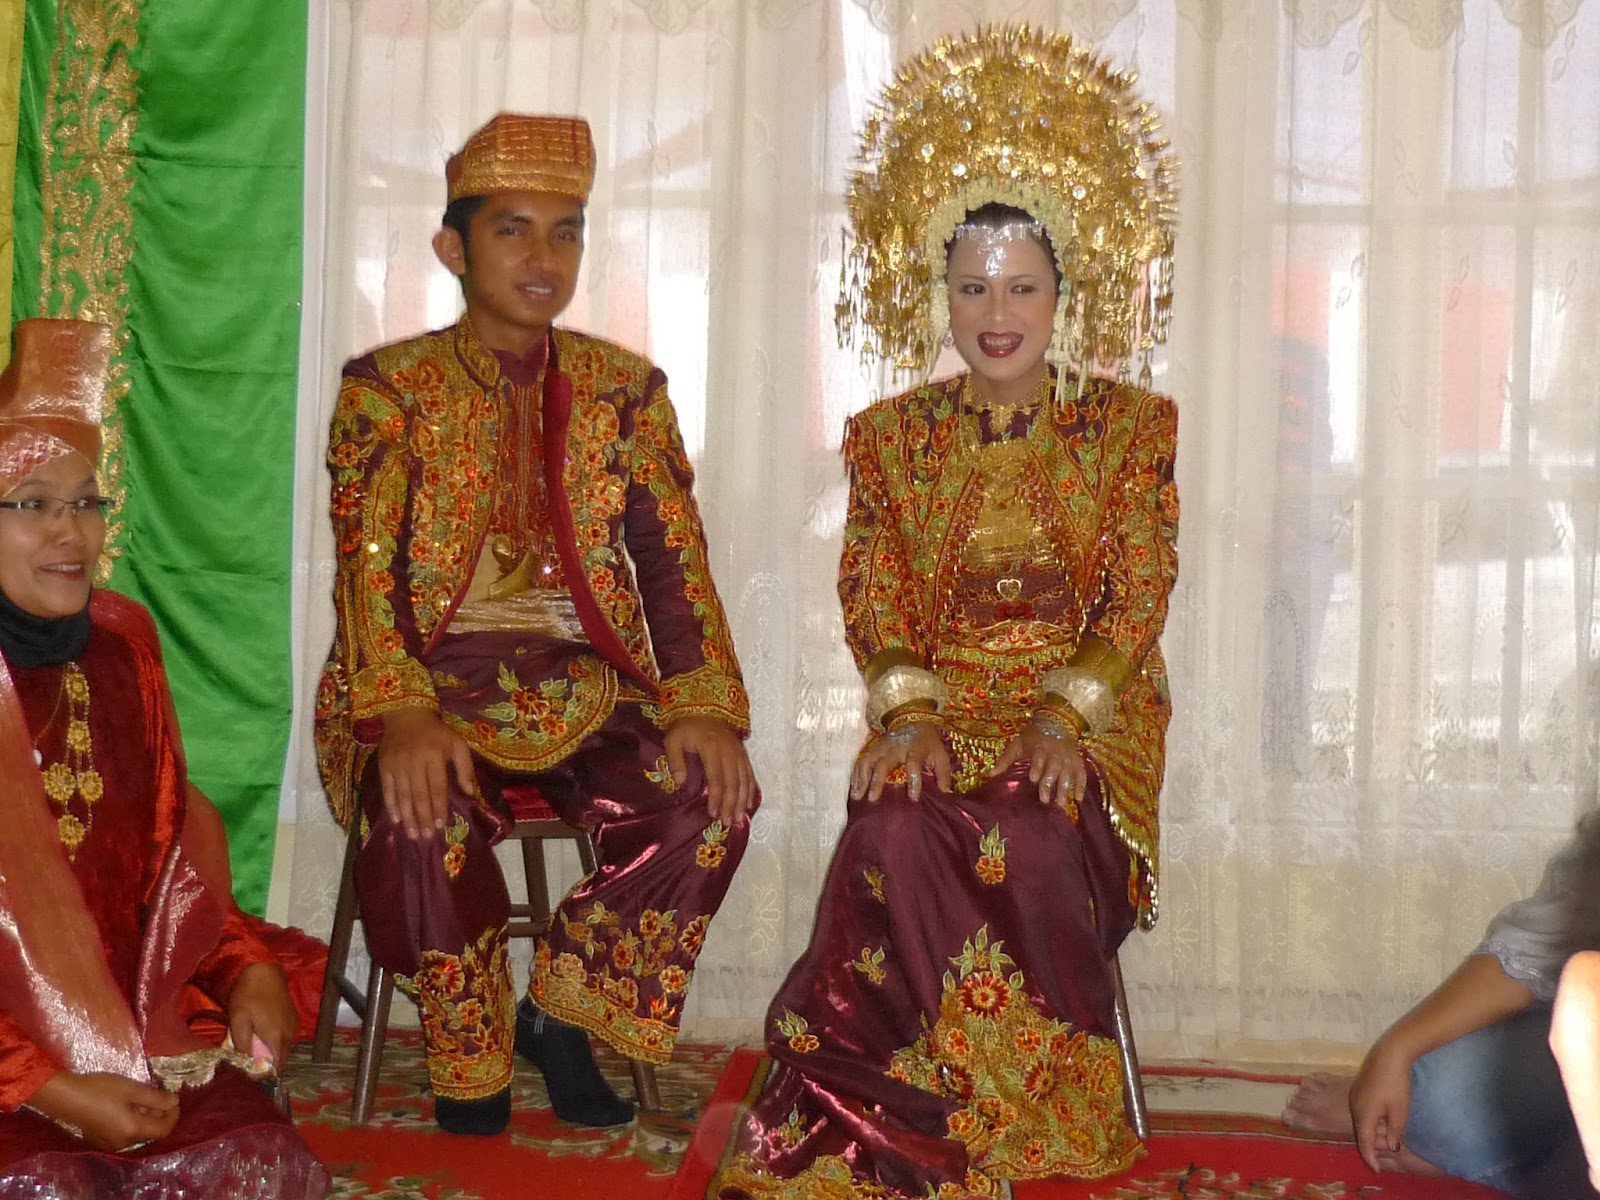  Sumatera Barat di Terokai Adat Perkahwinan di Bukittinggi 